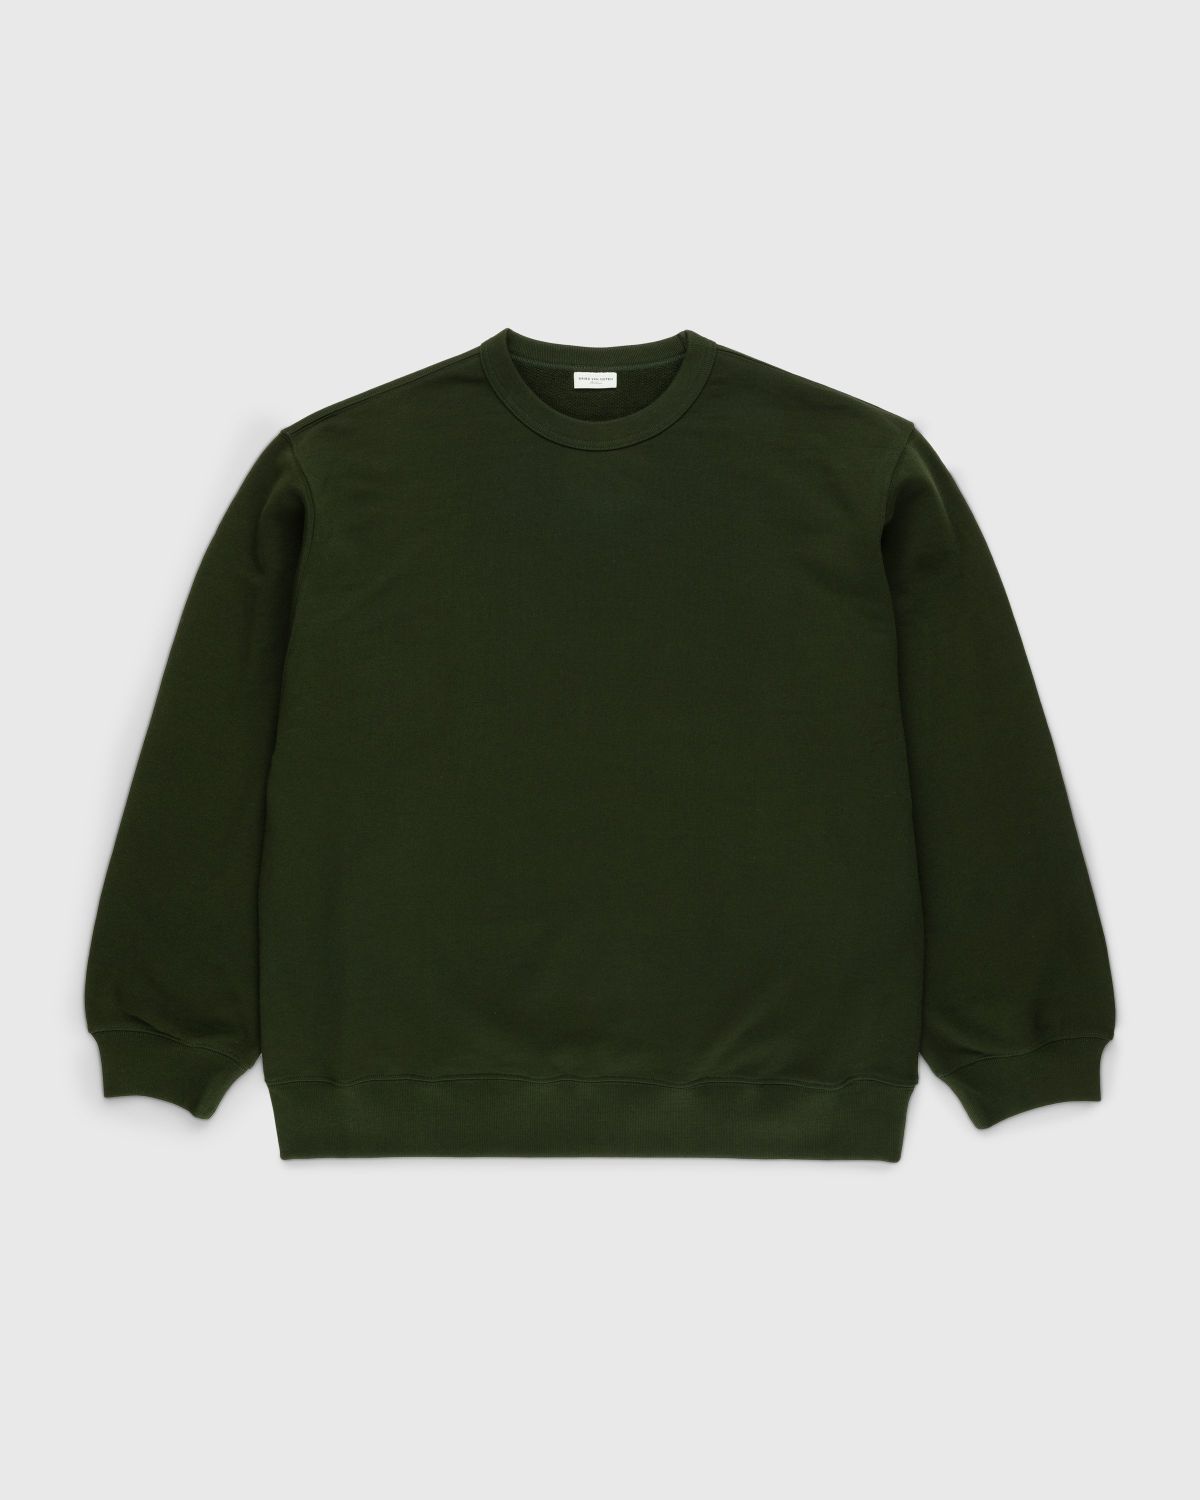 Dries van Noten – Hax Oversized Crewneck Green - Sweatshirts - Green - Image 1